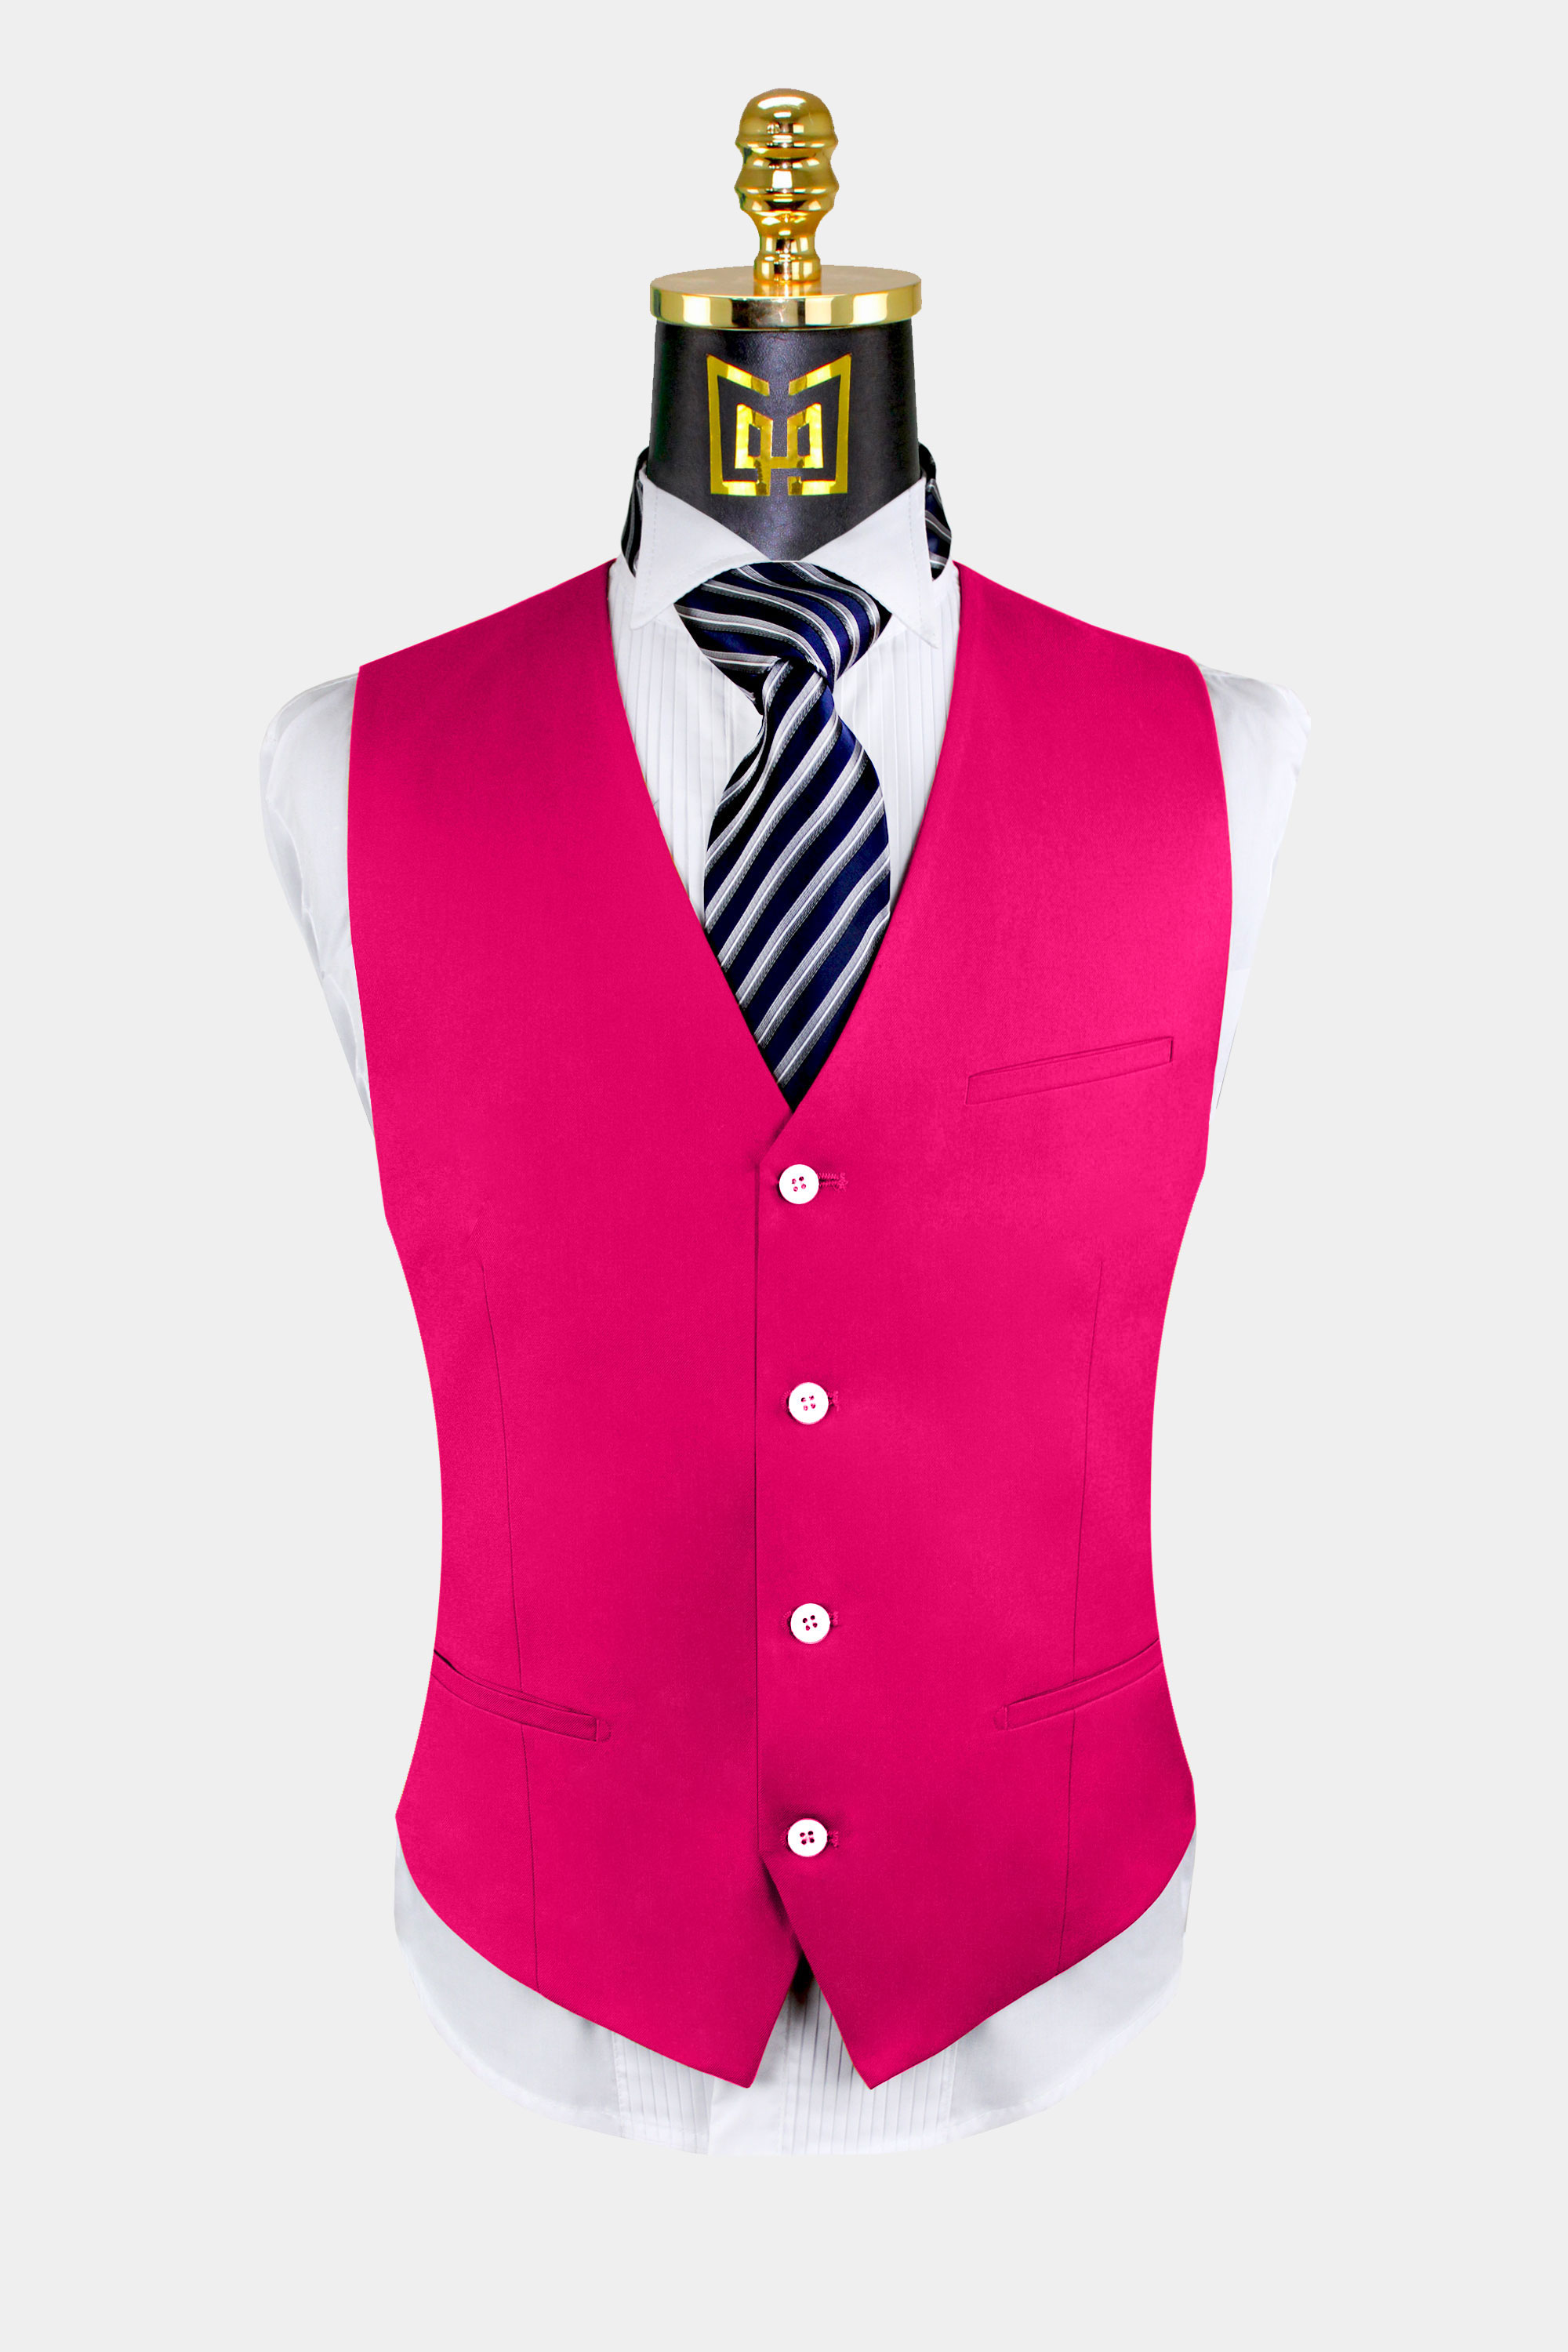 New Men's hot pink formal vest Tuxedo Waistcoat_necktie & bowtie set wedding 